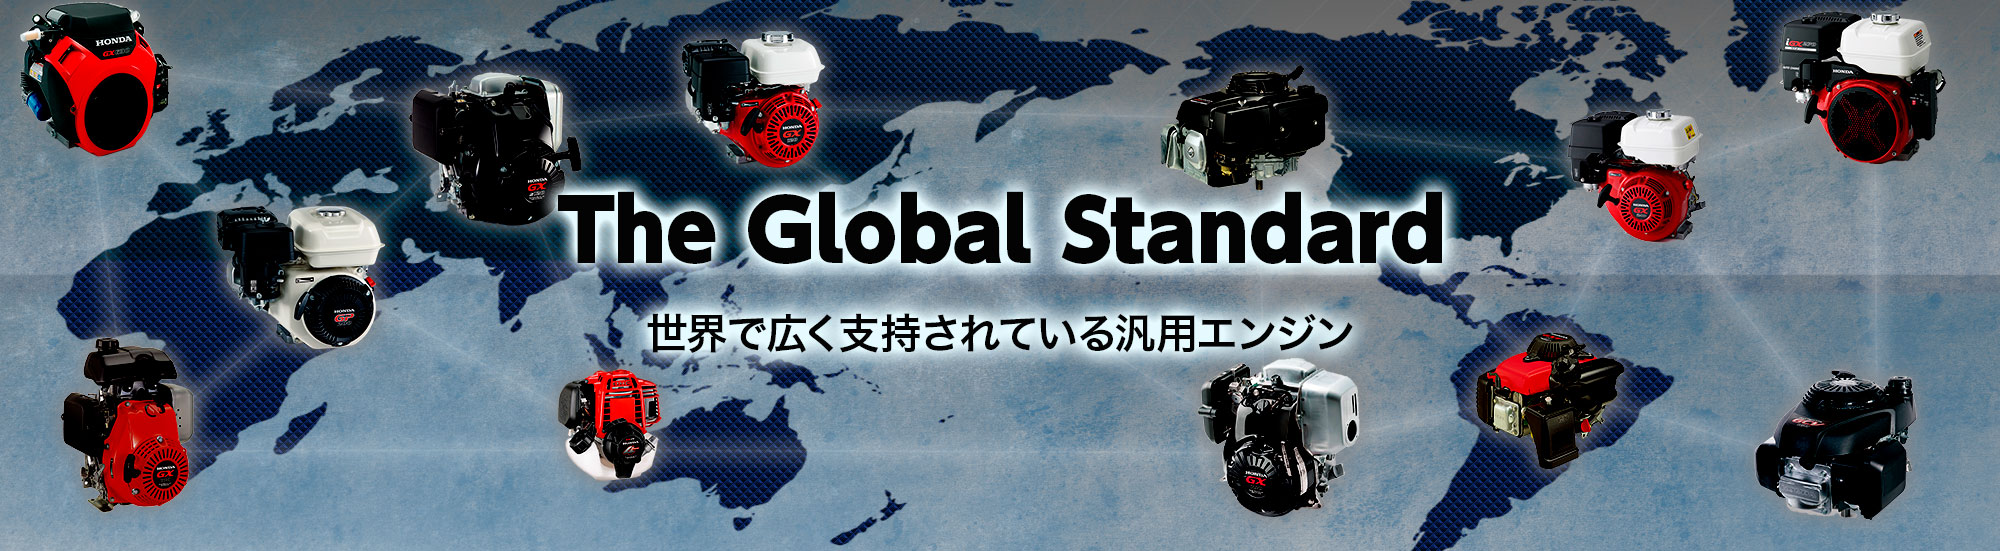 The Global Standard